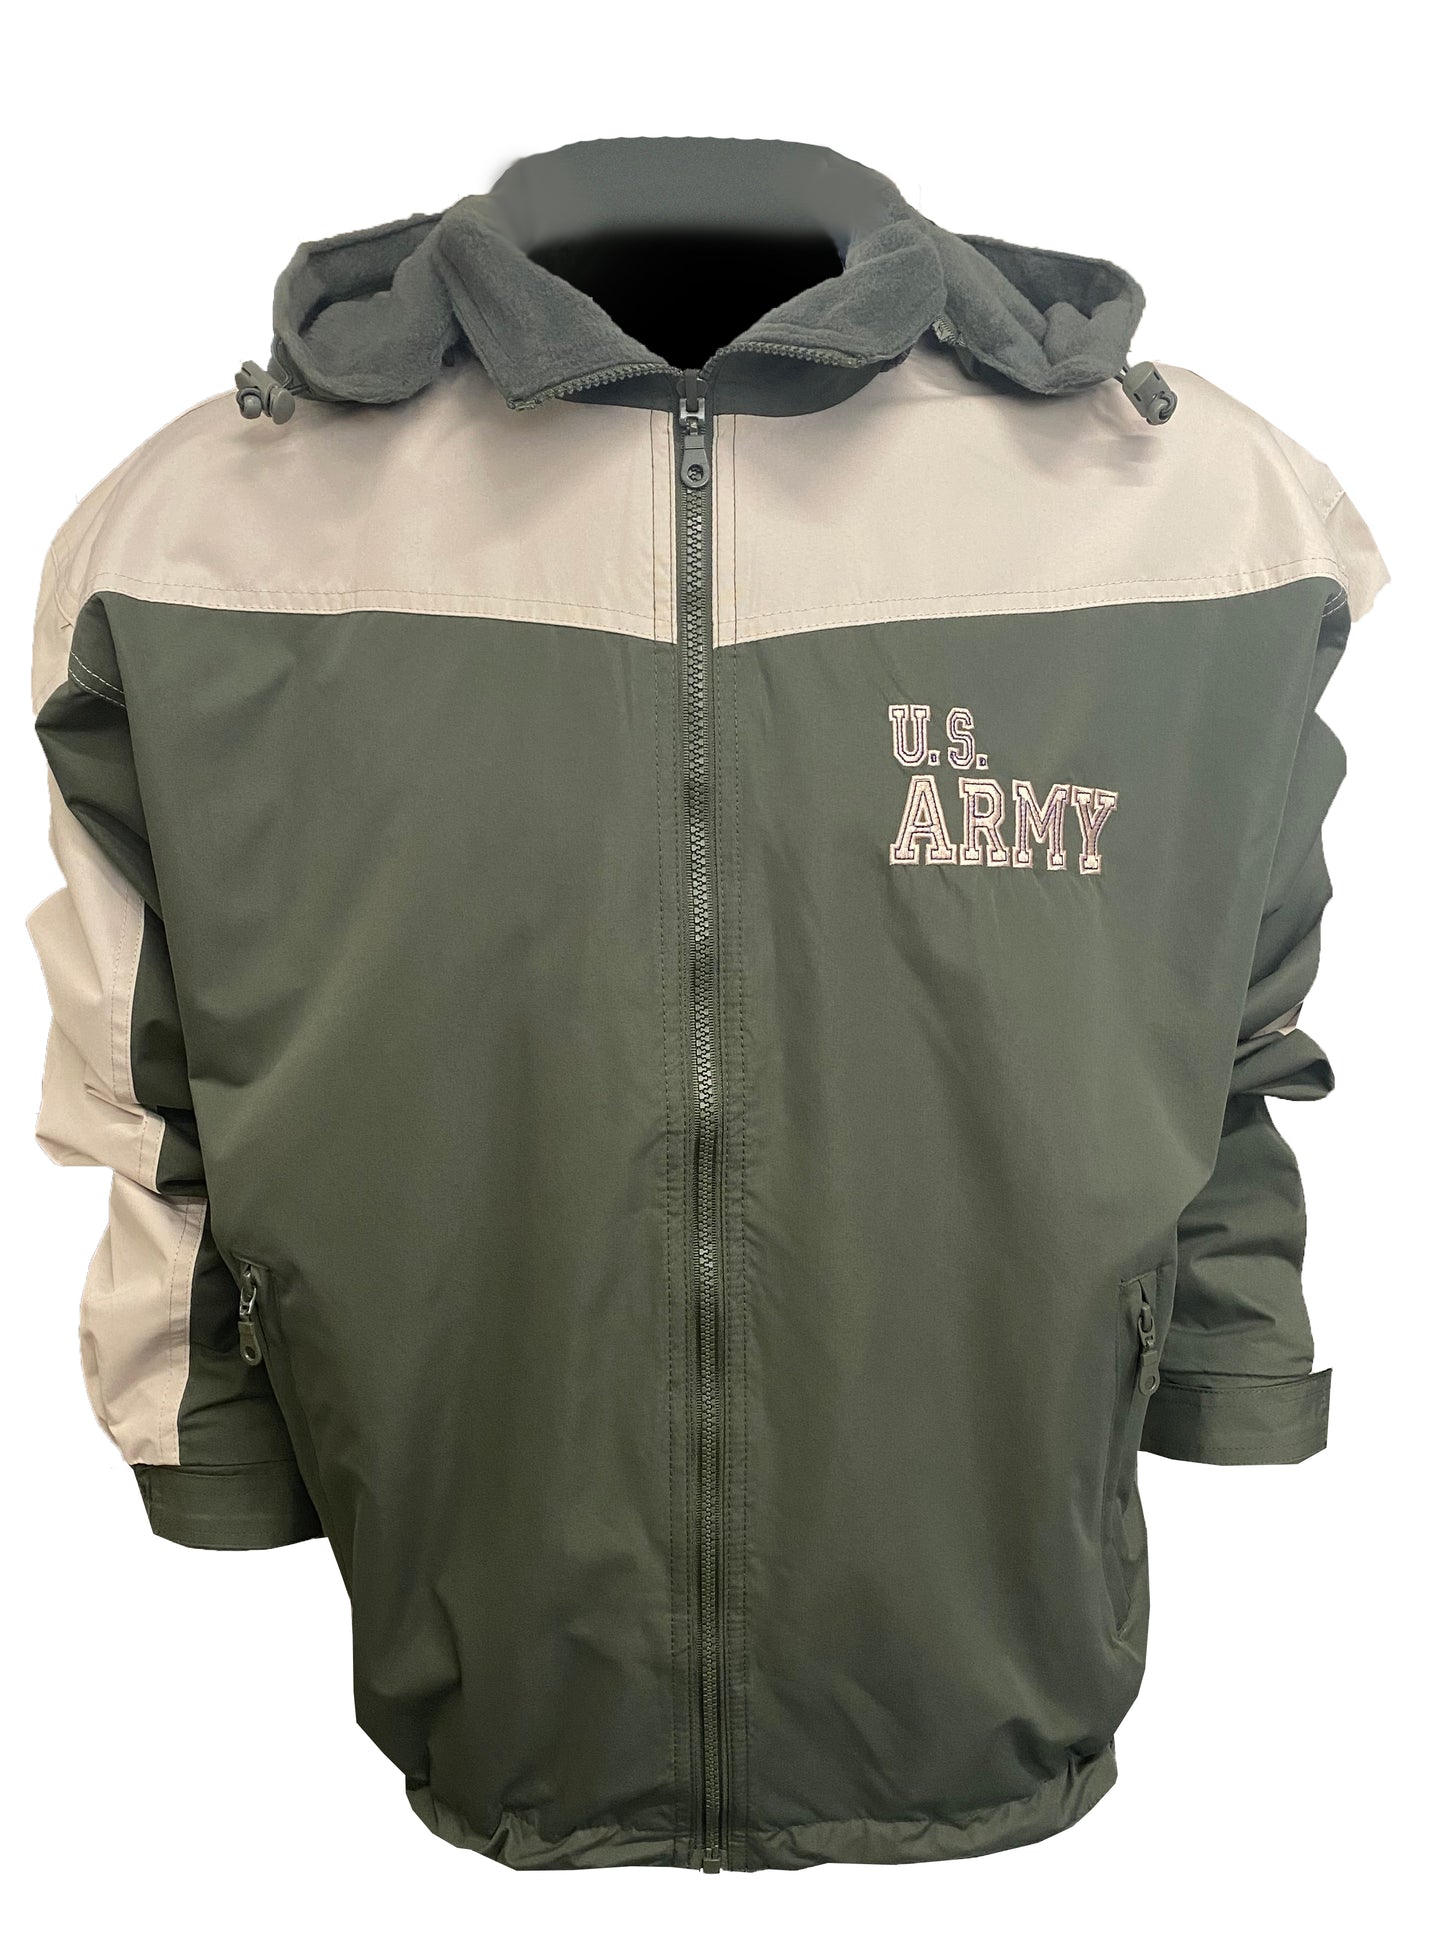 US Army Fleece Jacket, Reversible